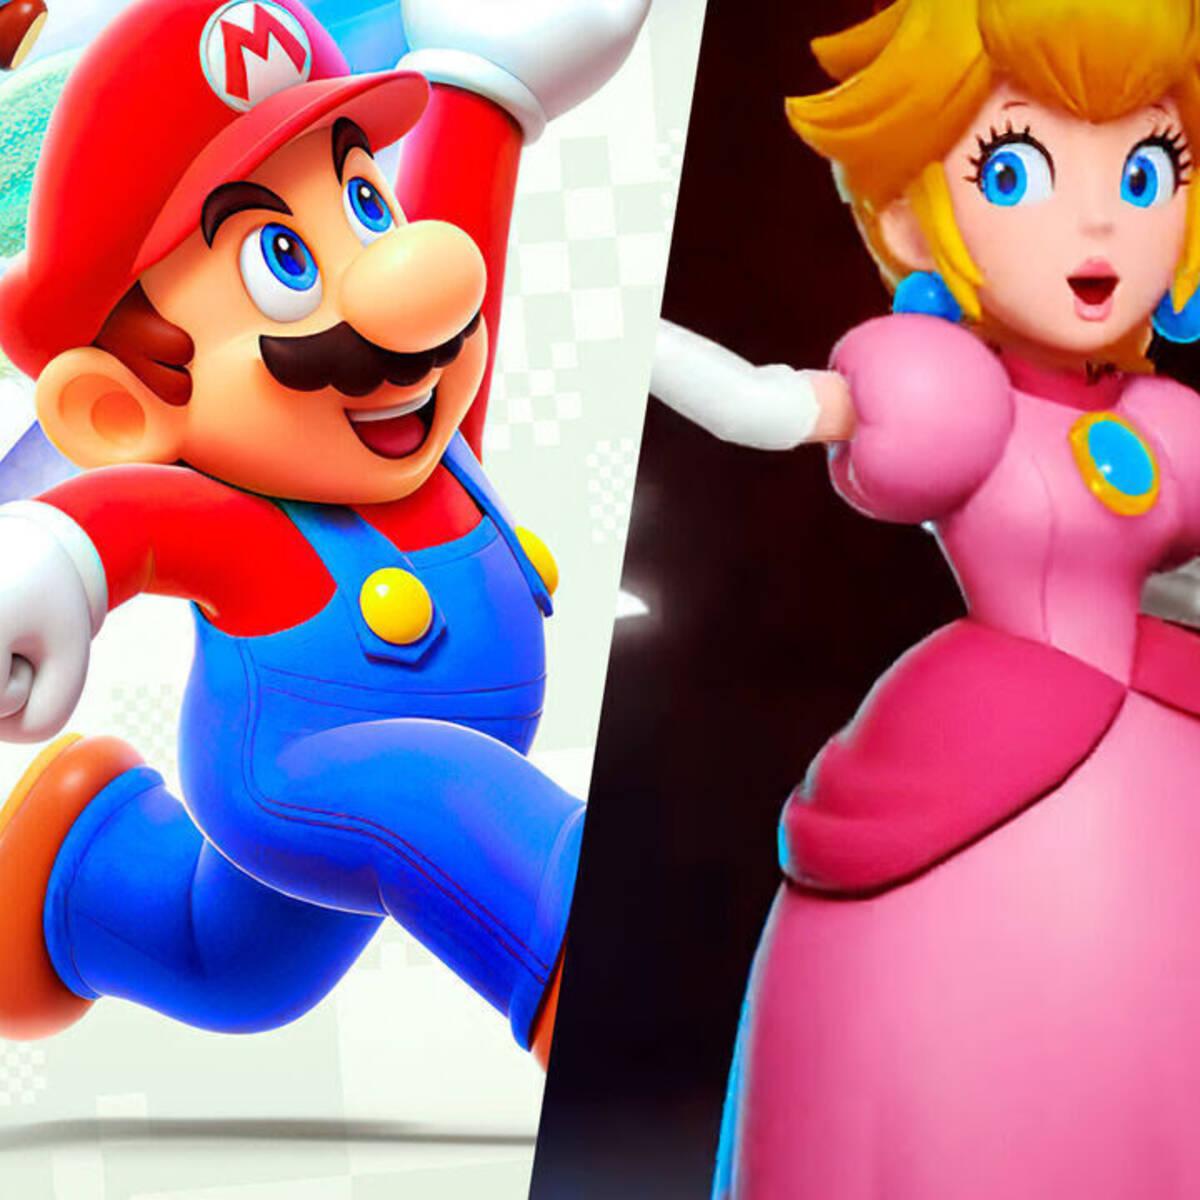 El nuevo juego de Mario en 3D que llegaría junto a Nintendo Switch 2 filtra  nuevos detalles